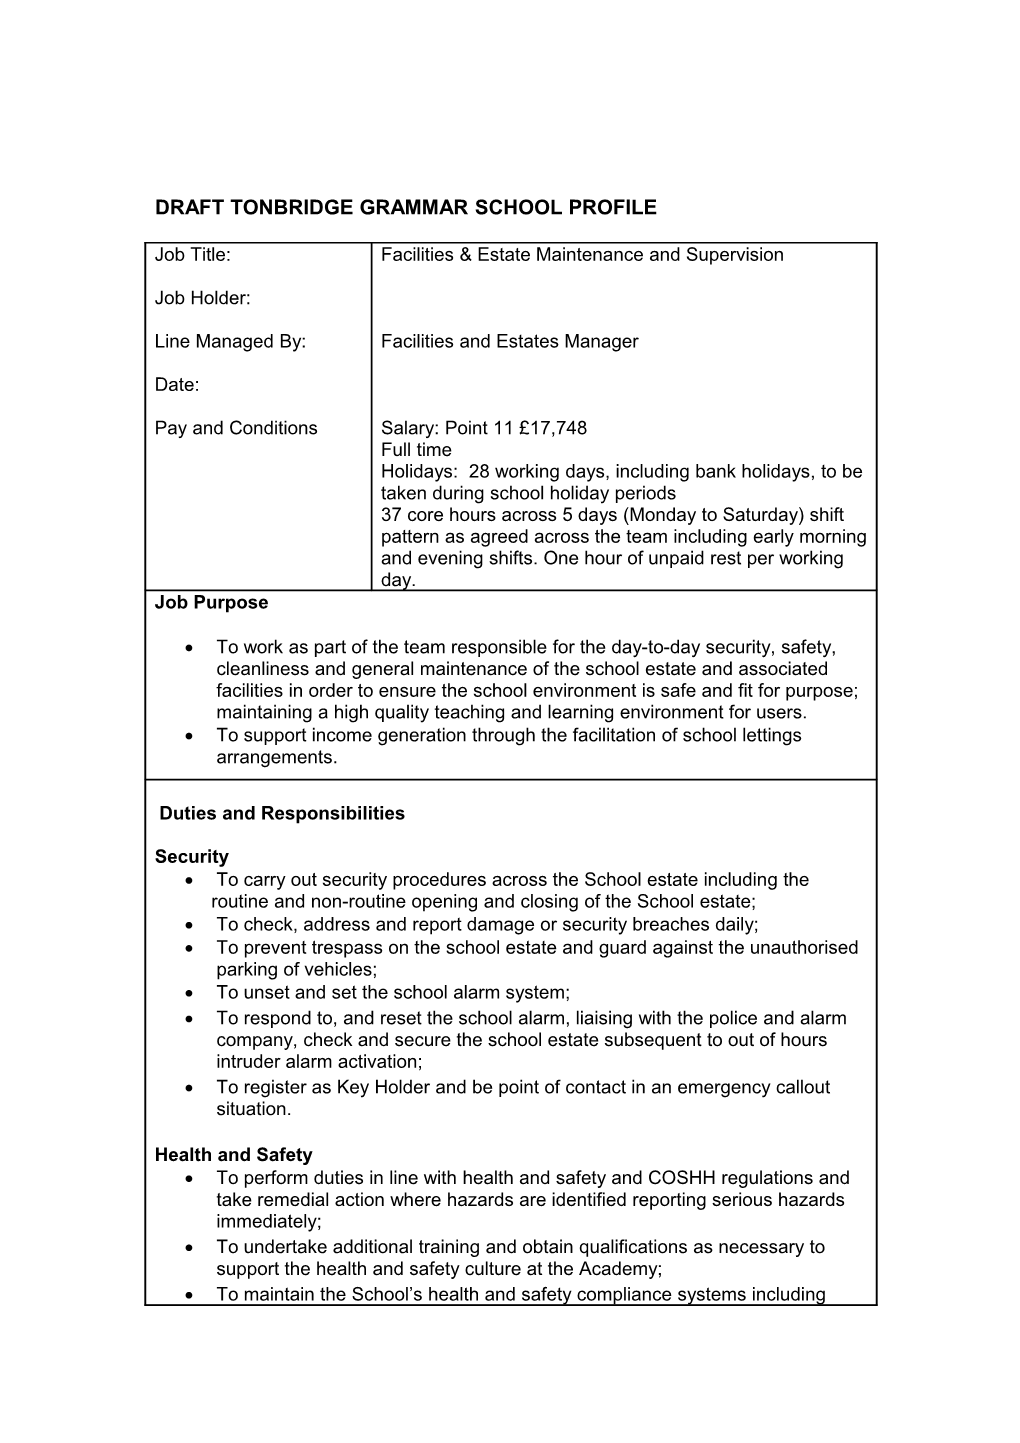 Tonbridge Grammar School Job Description